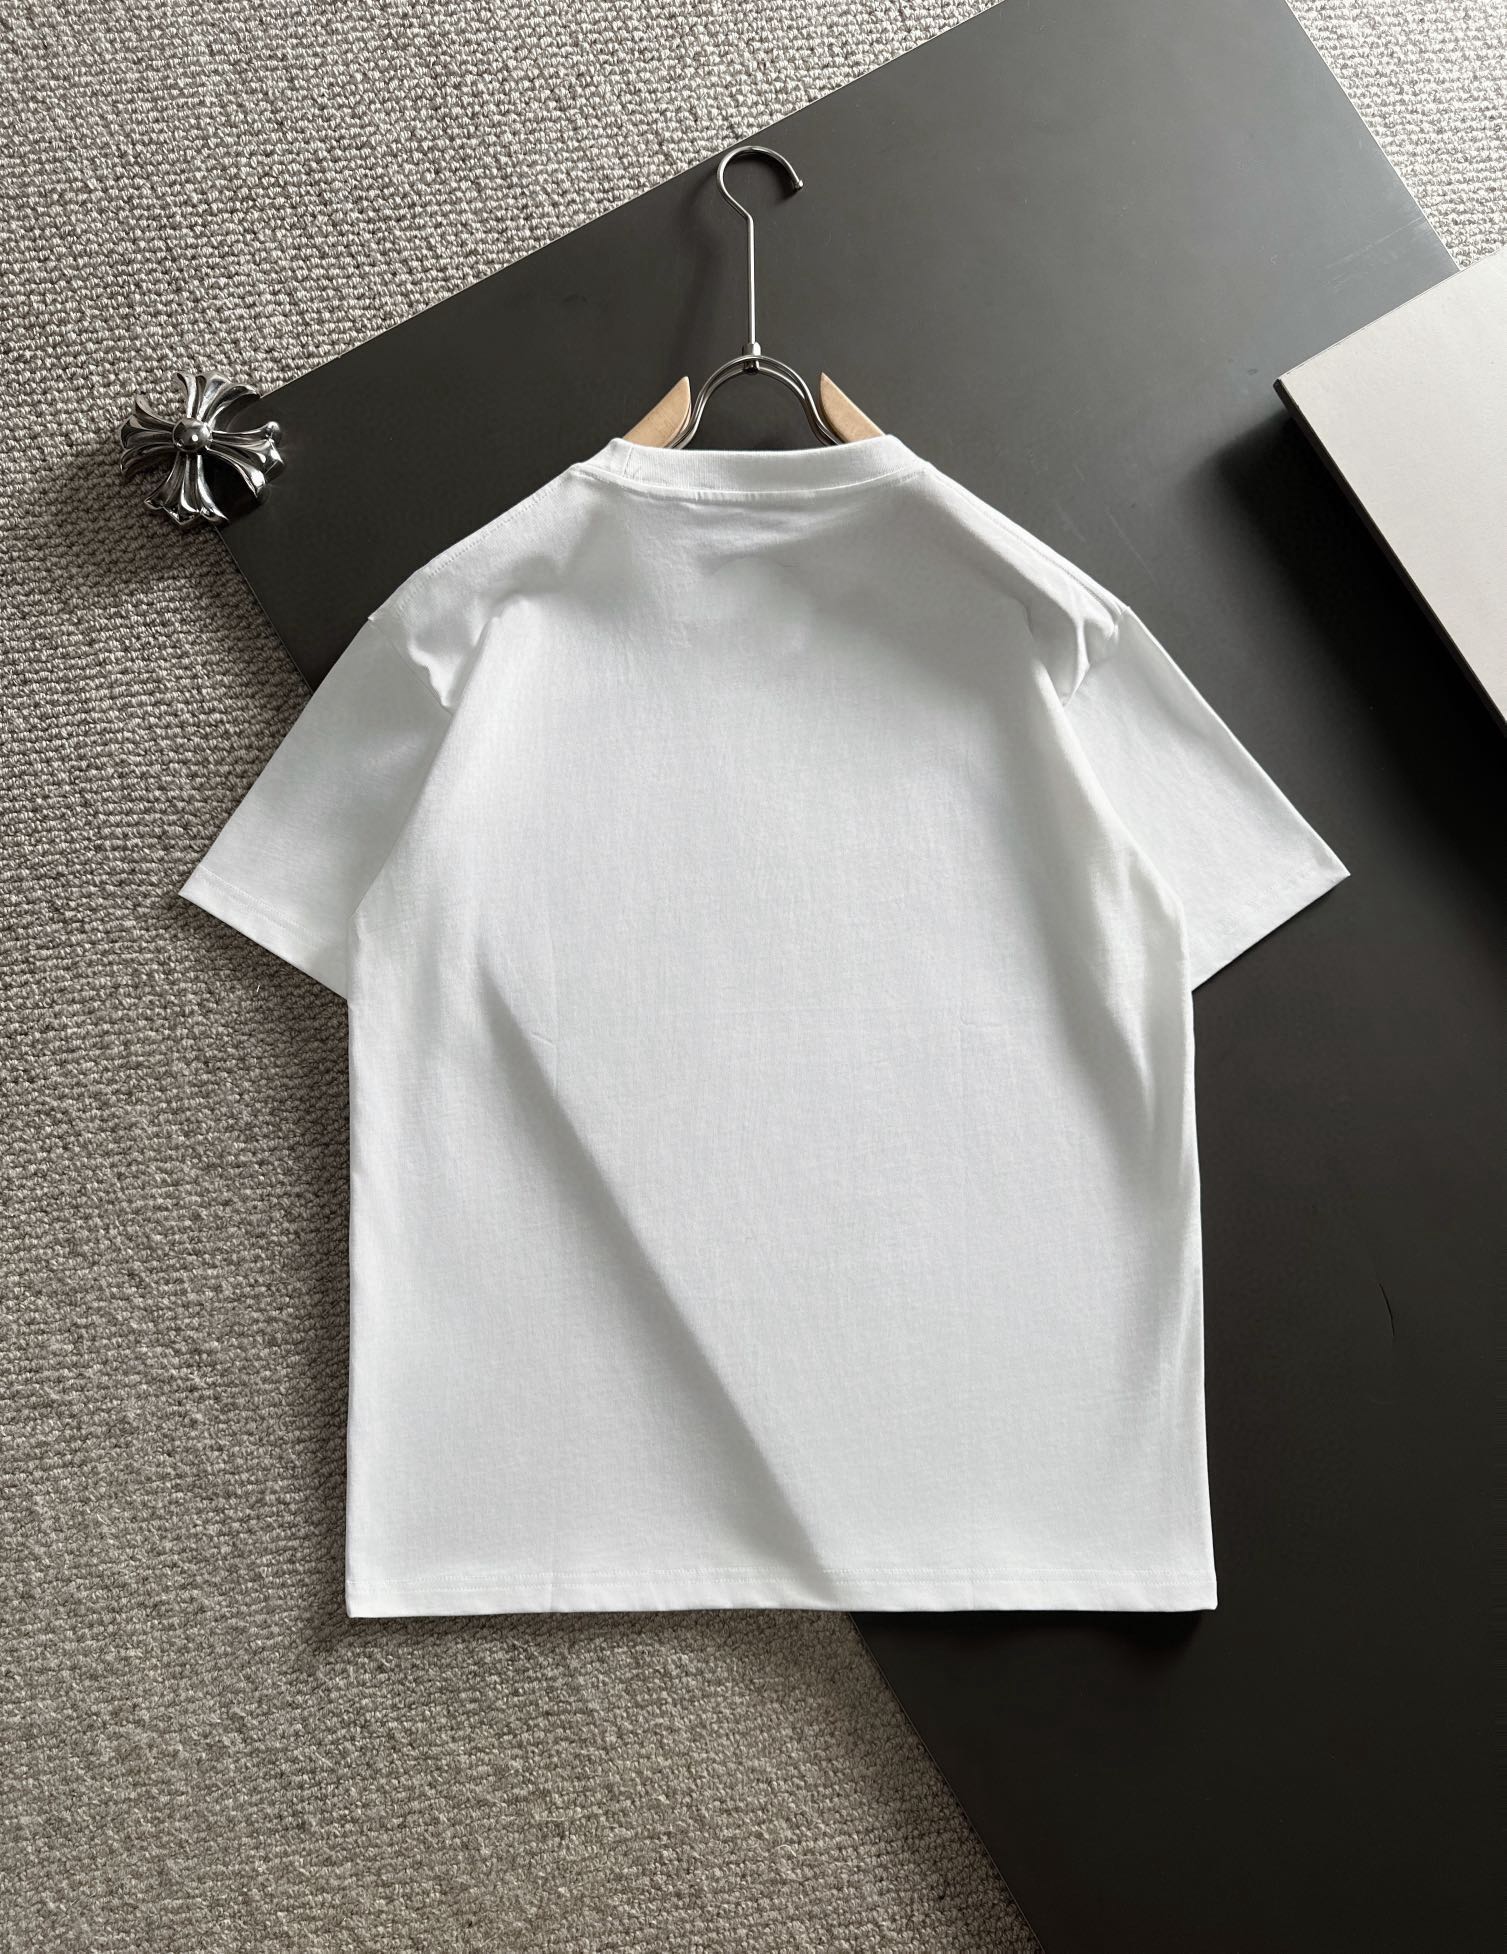 お買い得豊富な diorのtシャツ激安通販 短袖 トップス 純綿tシャツ シンプル 人気 ホワイト_7